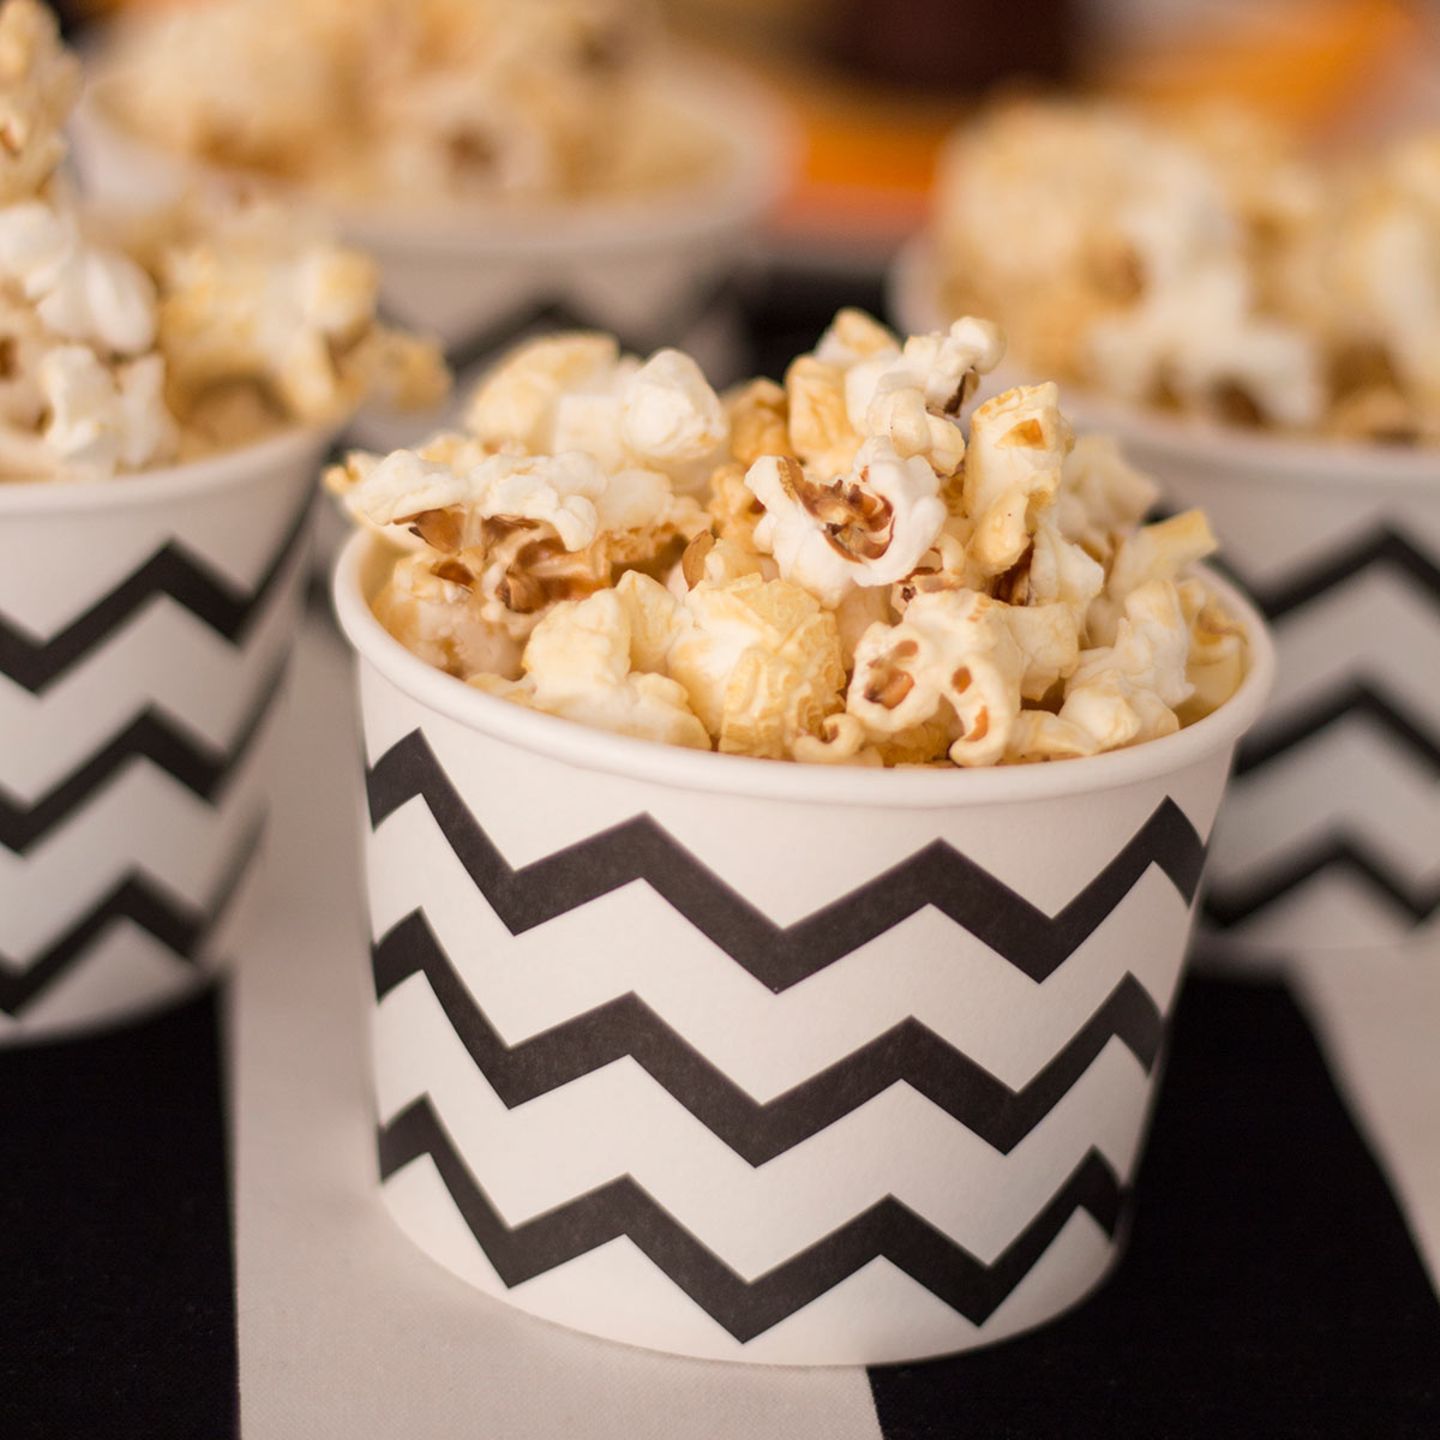 Schwarz-weiß gemusterte Schalen mit Popcorn